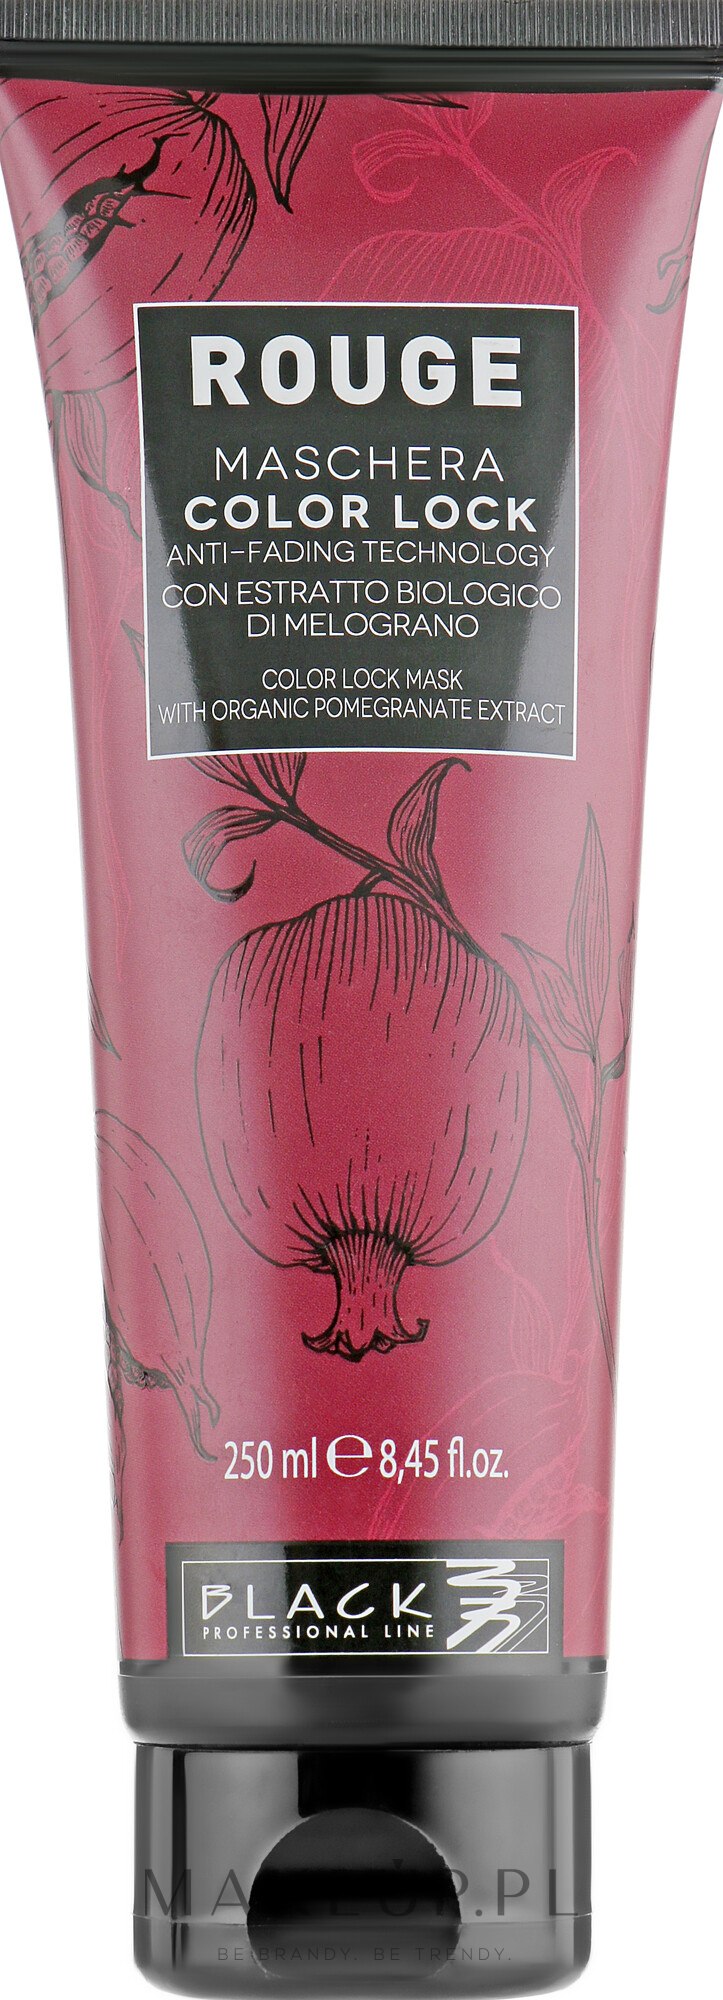 Maska chroniąca kolor włosów farbowanych z ekstraktem z granatu - Black Professional Line Rouge Color Lock Mask — Zdjęcie 250 ml